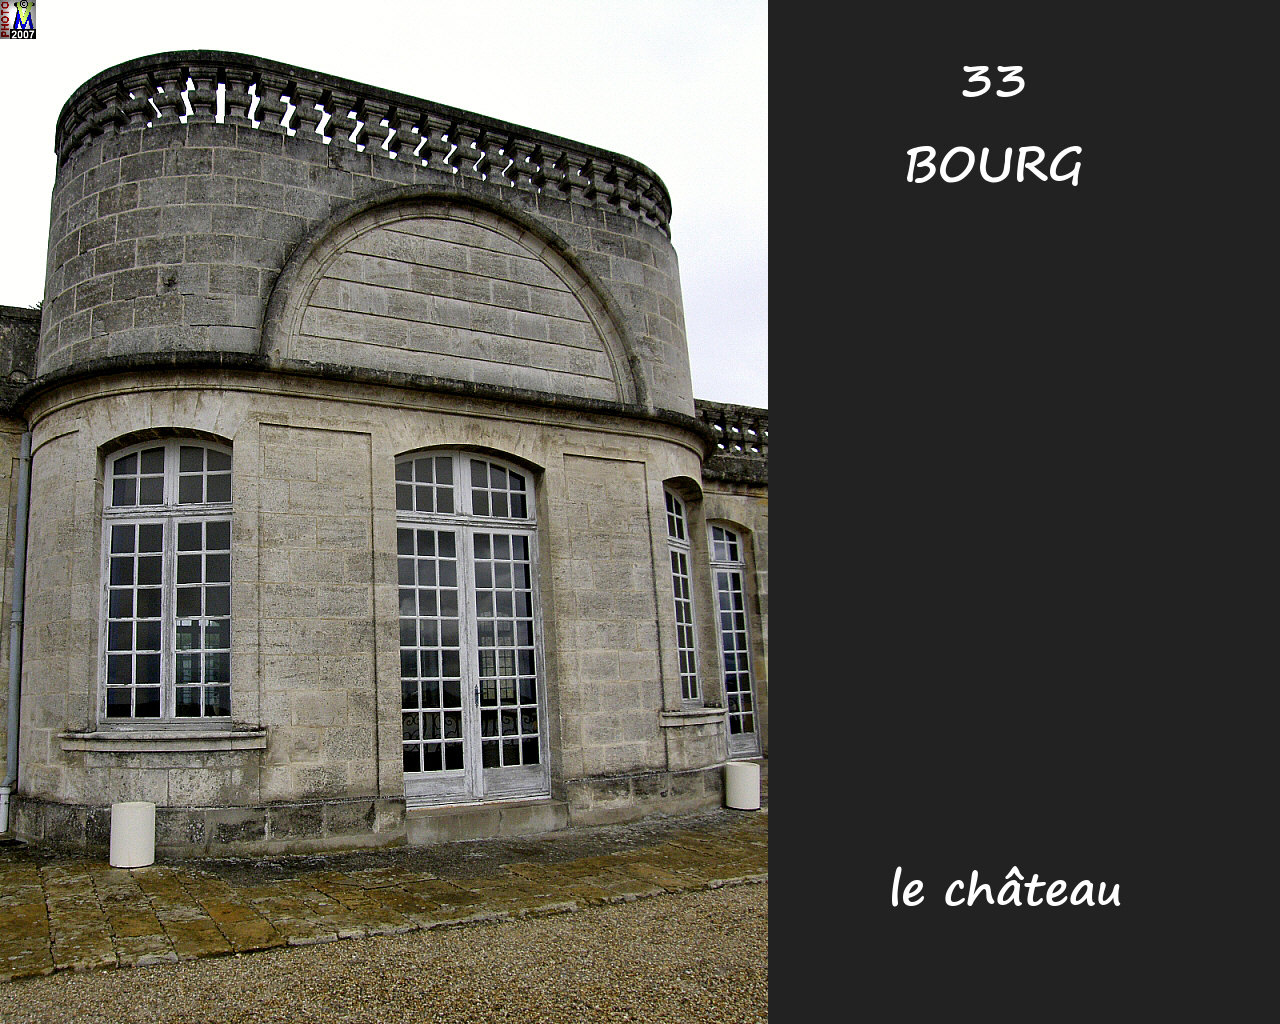 33BOURG_chateau_124.jpg